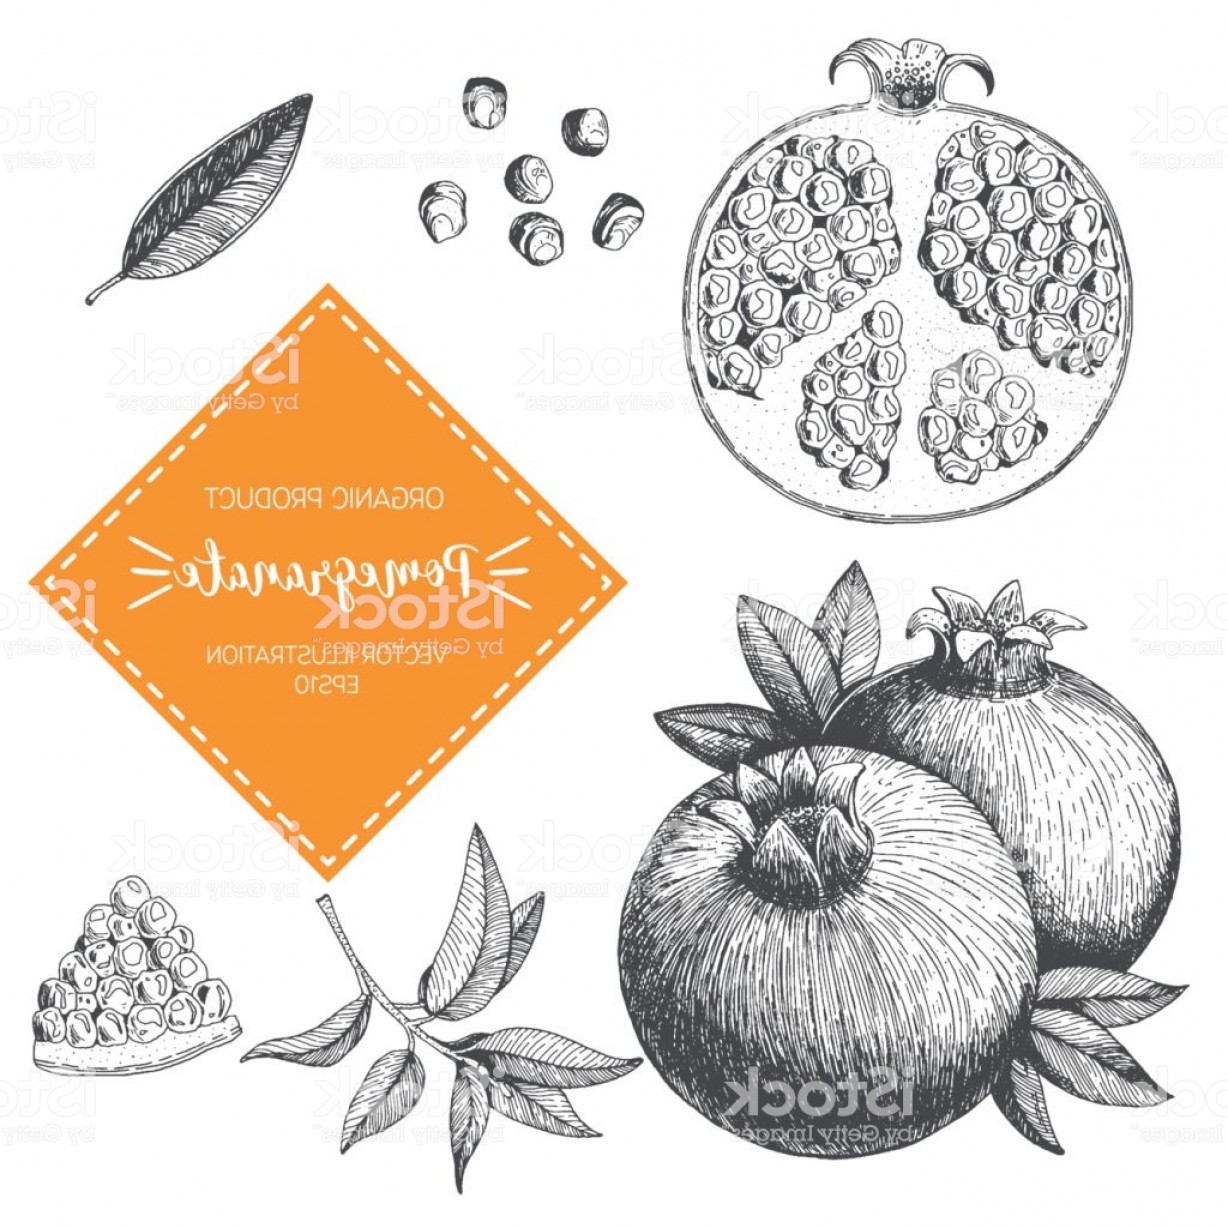 Pomegranate vector illustration.